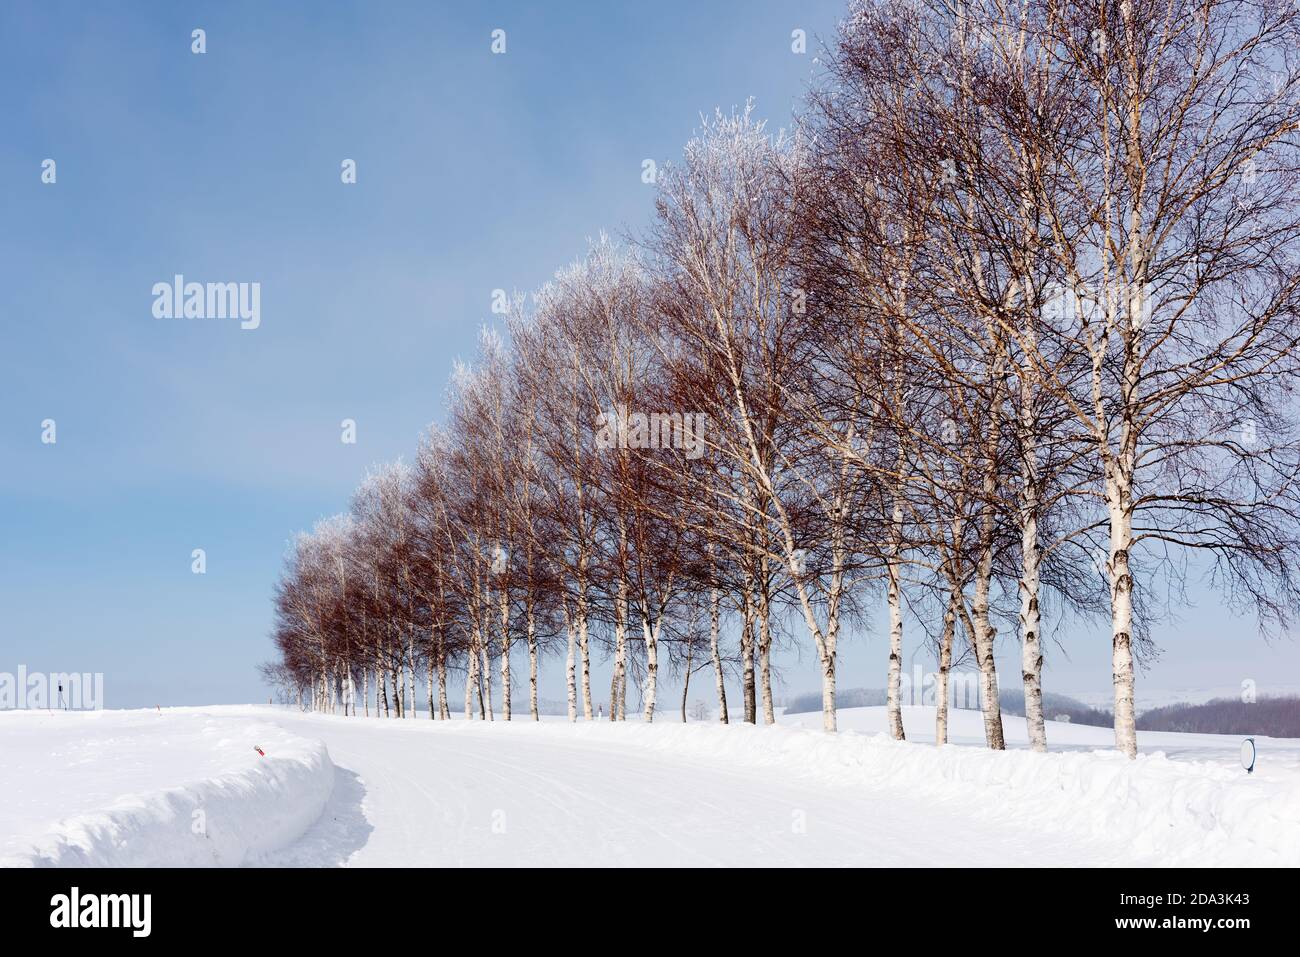 Winterliche Landschaft in Biei, Hokkaido, Japan mit ikonischen Bäumen. Stockfoto